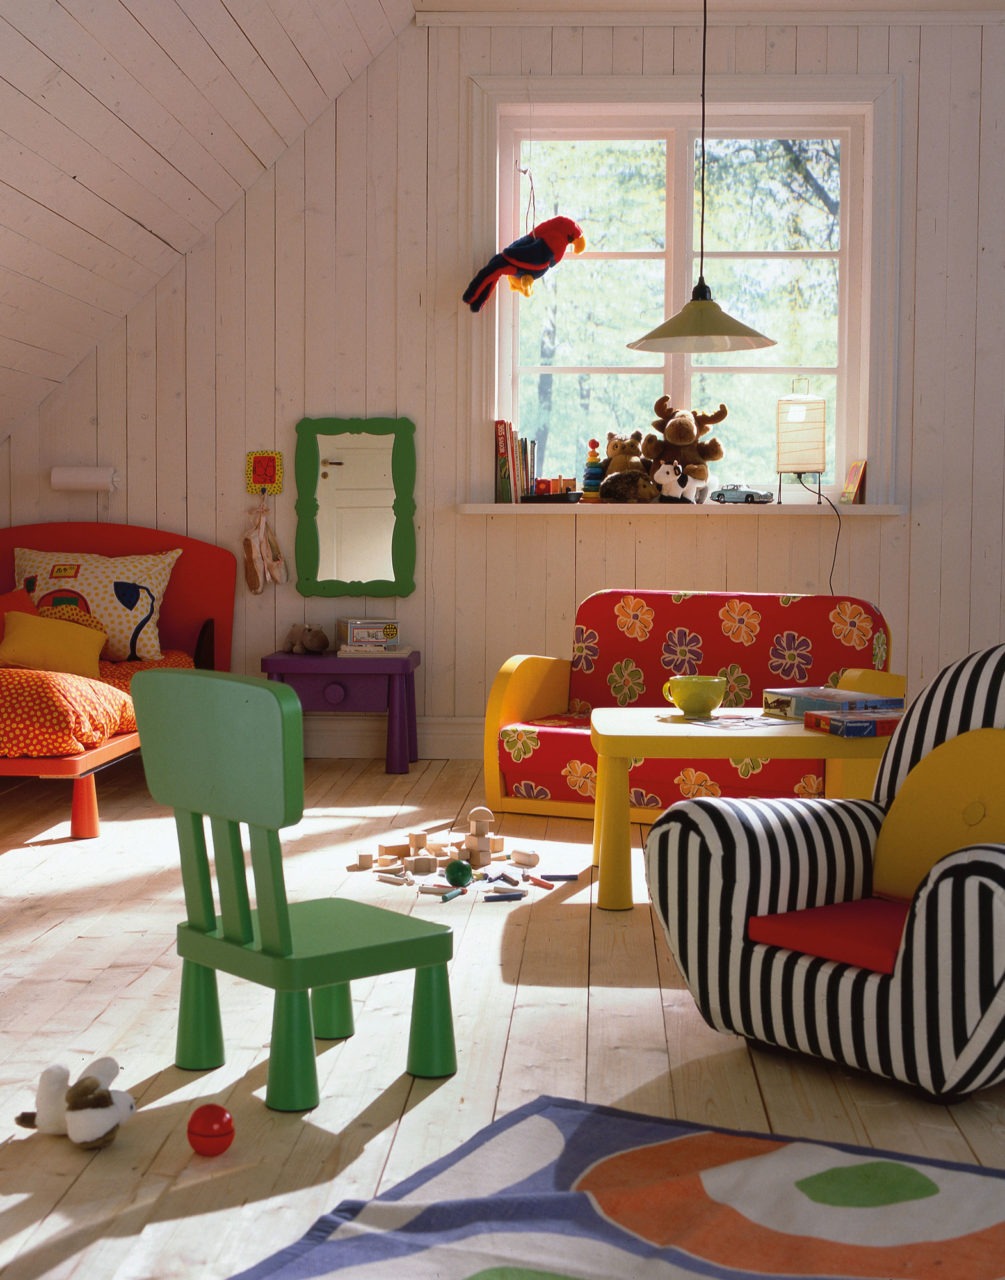 Muebles coloridos redondeados, modelo MAMMUT, y juguetes en una habitación con suelo, paredes y techos de madera clara.